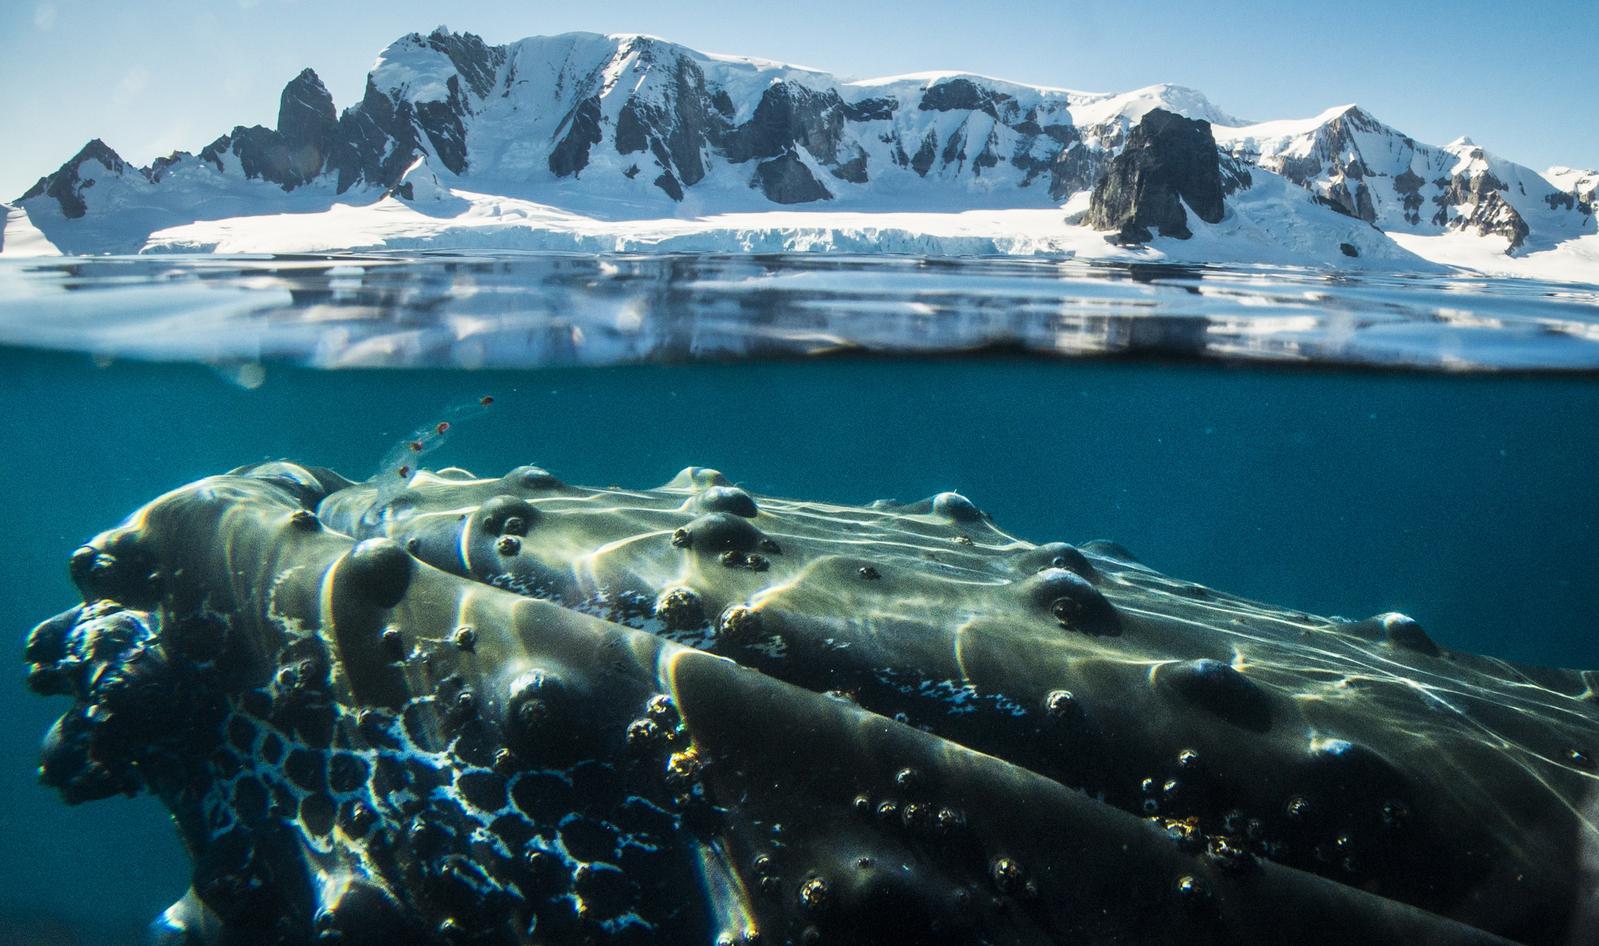 Antrtica - Avistaje de Ballenas, viaje de descubrimiento y aprendizaje